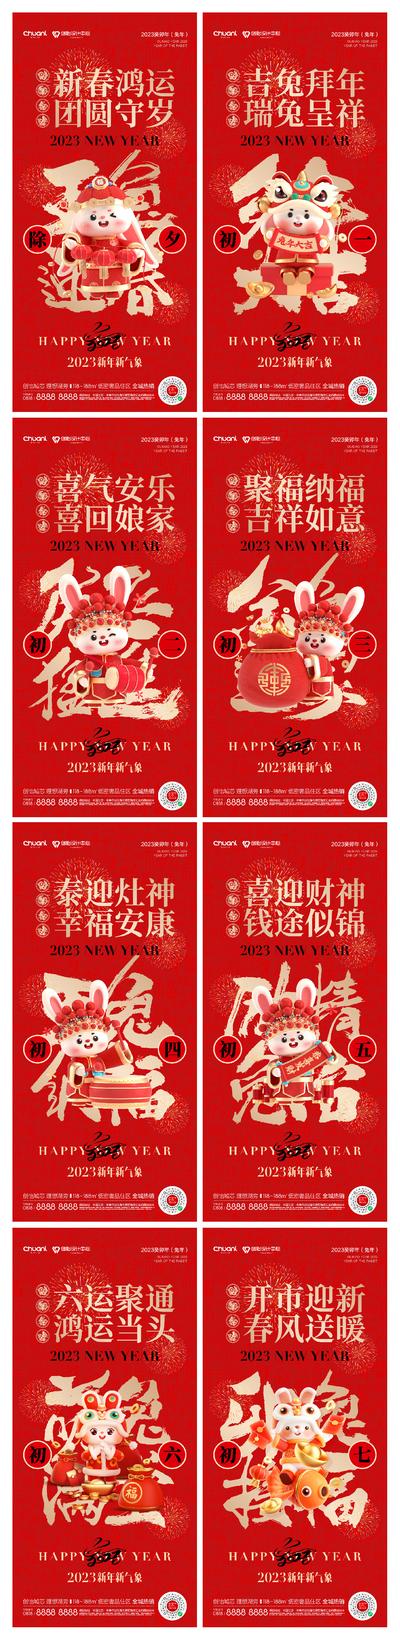 南门网 海报 中国传统节日 春节 除夕 新年 兔子 初一 年俗 开工 喜庆  